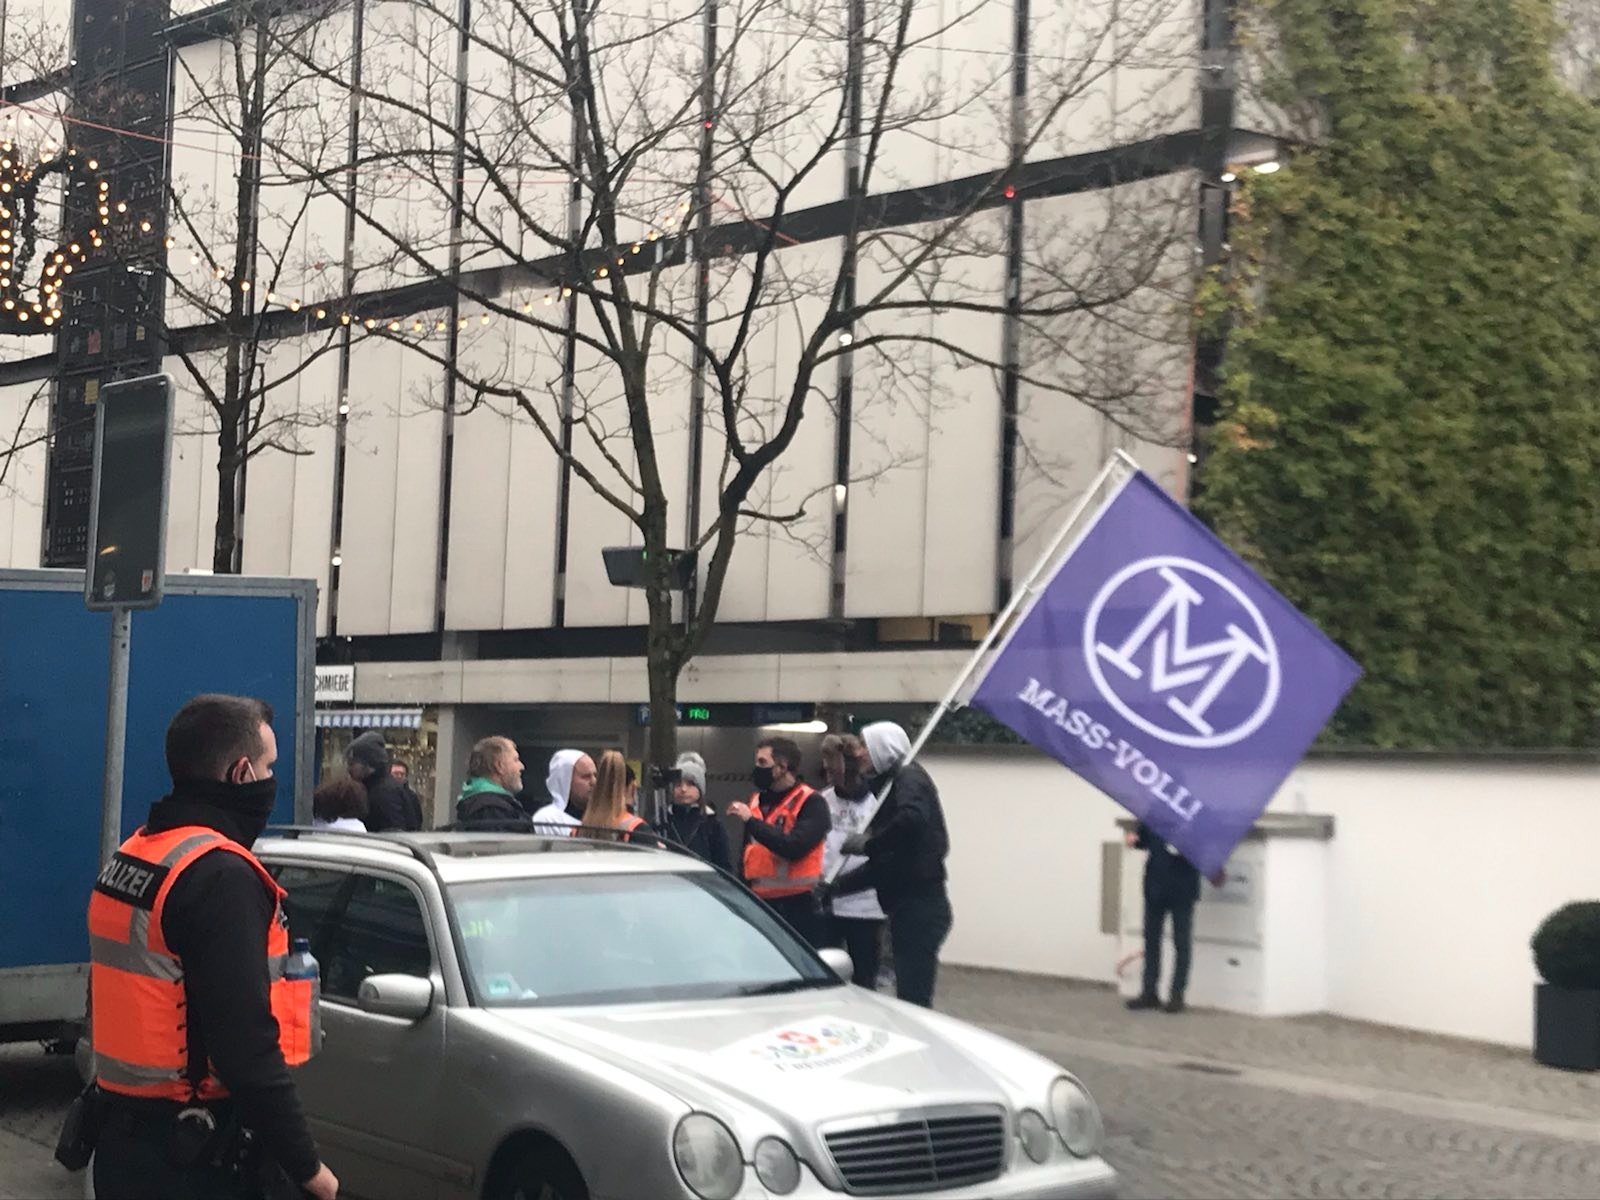 Die Luzerner Polizei unterbindet den Versuch, aus der bewilligten Platzdemo einen unbewilligten Protestzug durch die Altstadt werden zu lassen,